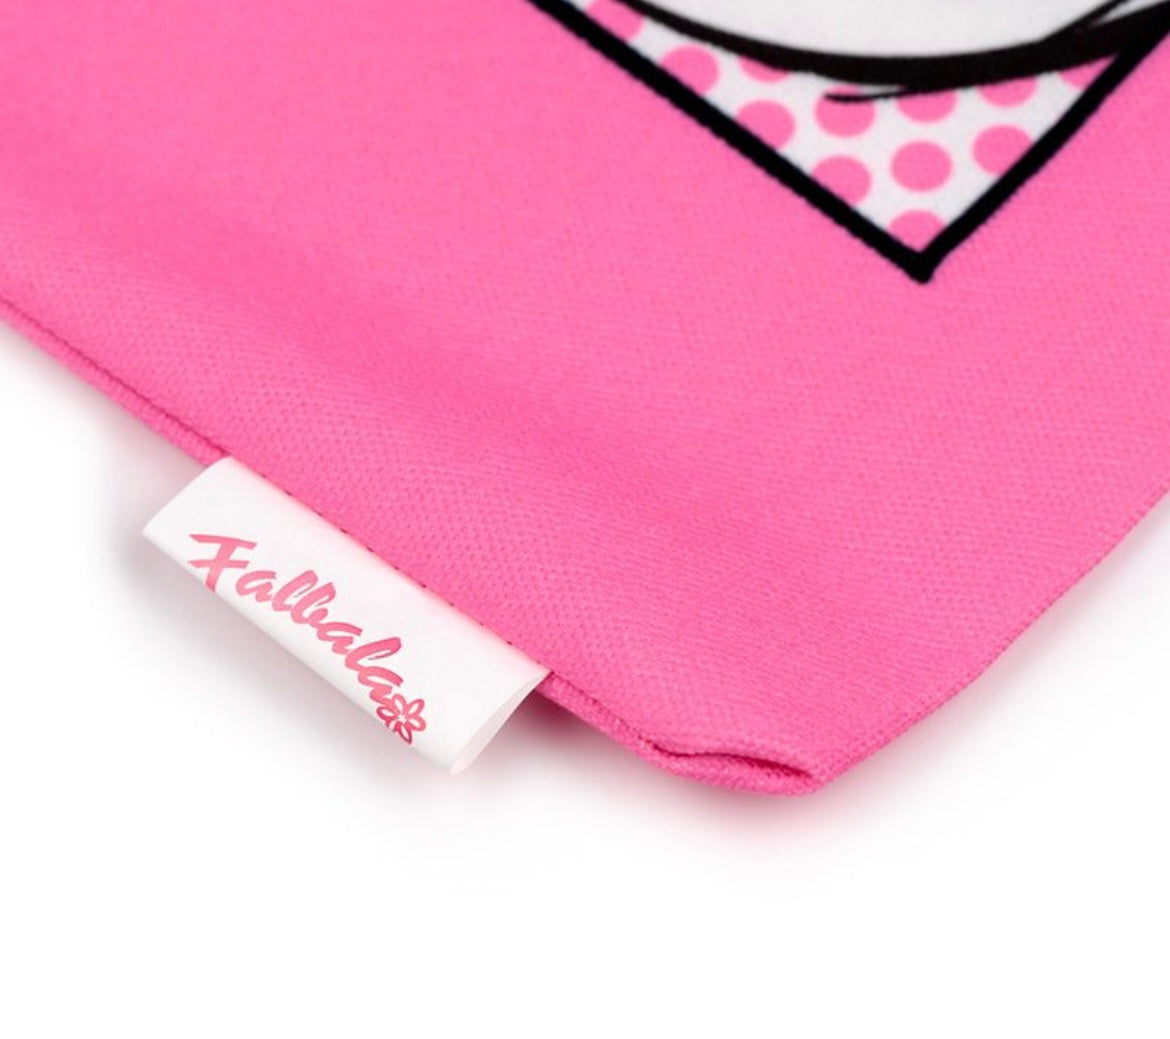 Falbala (Panacea) Asterix Pink Tote Bag